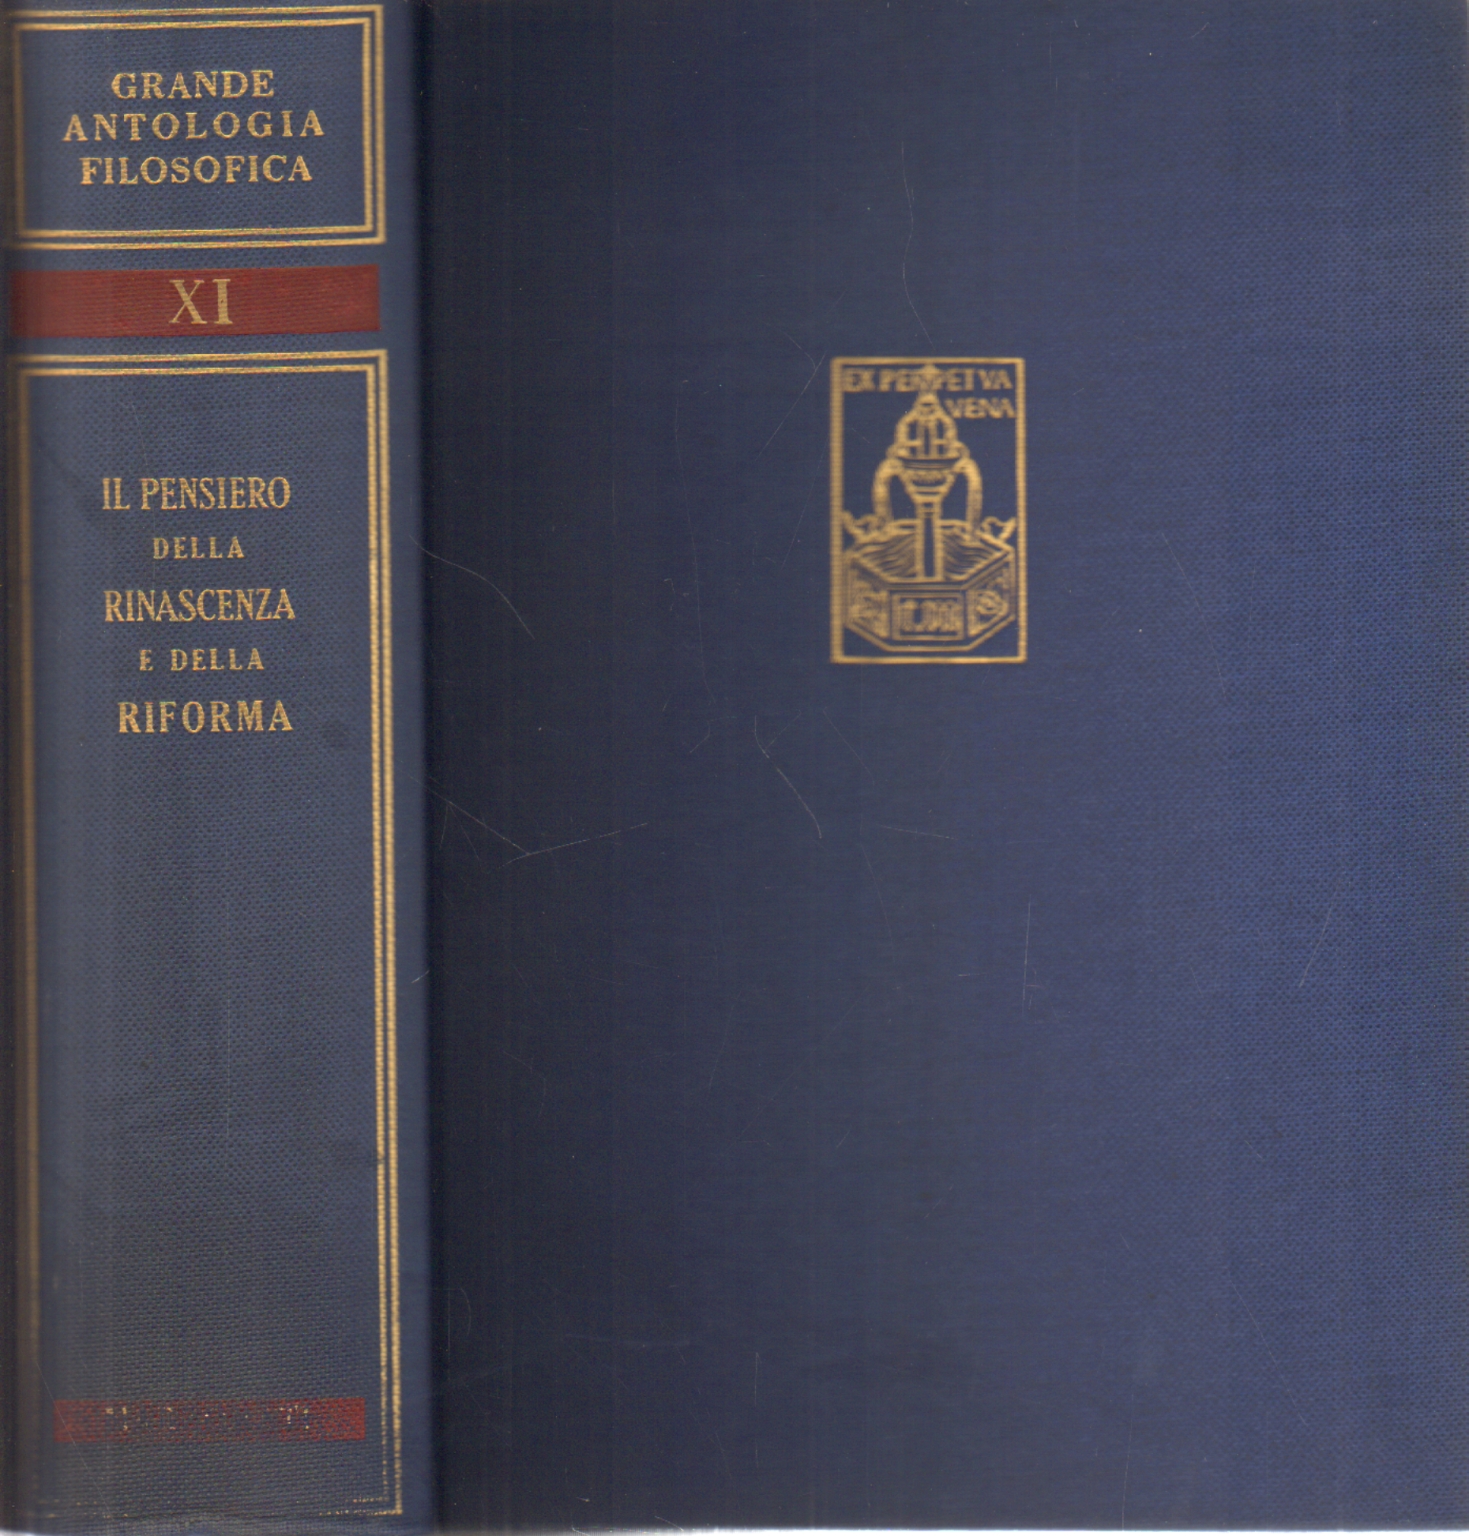 Grande antologia filosofica Vol. XI